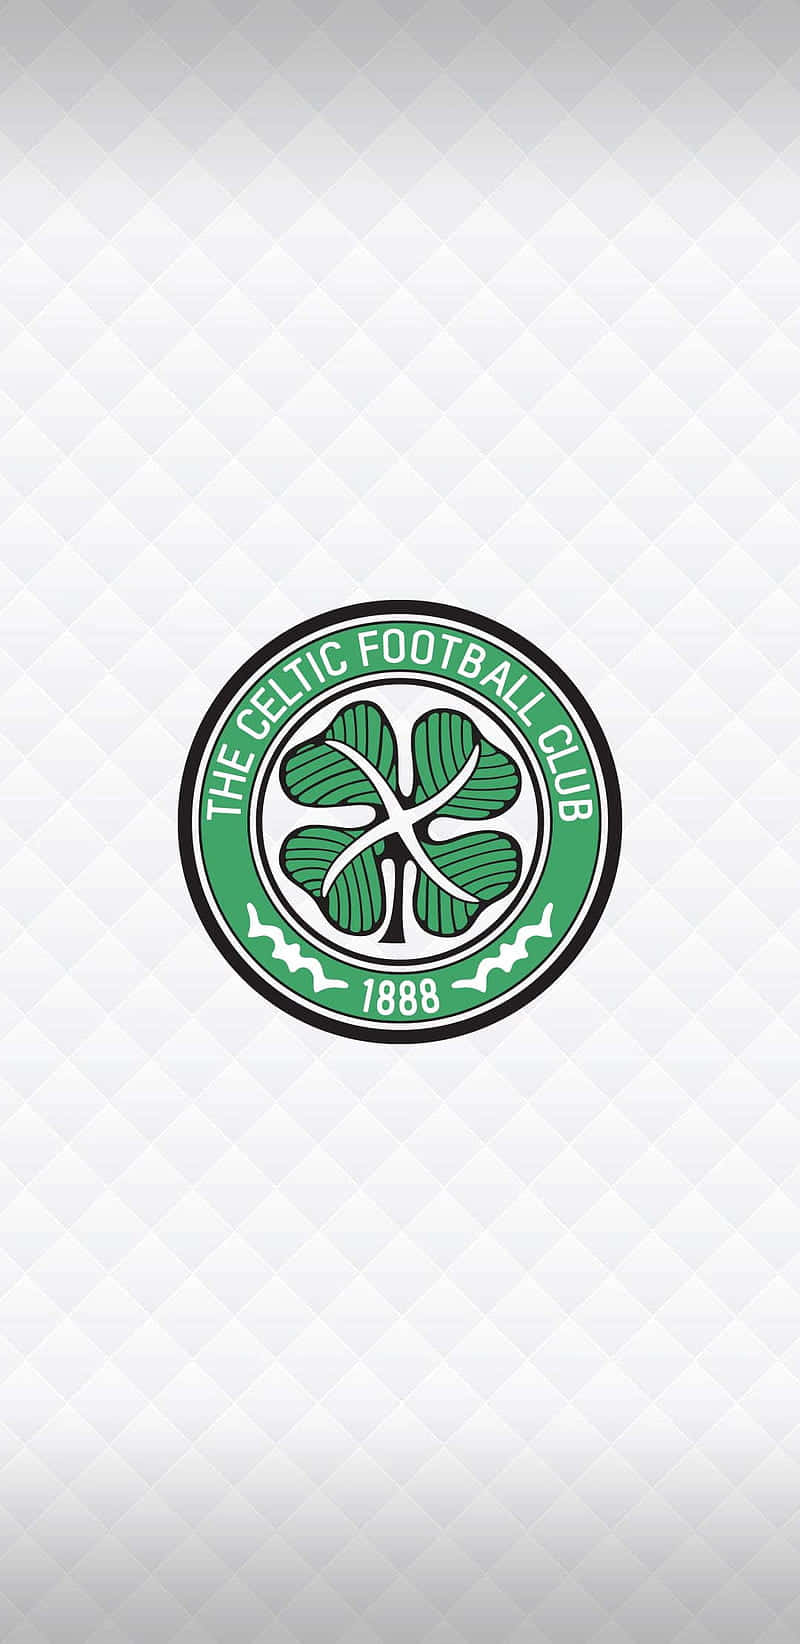 Celtic'smarch To Glory - A Marcha Da Glória Do Celtic Papel de Parede